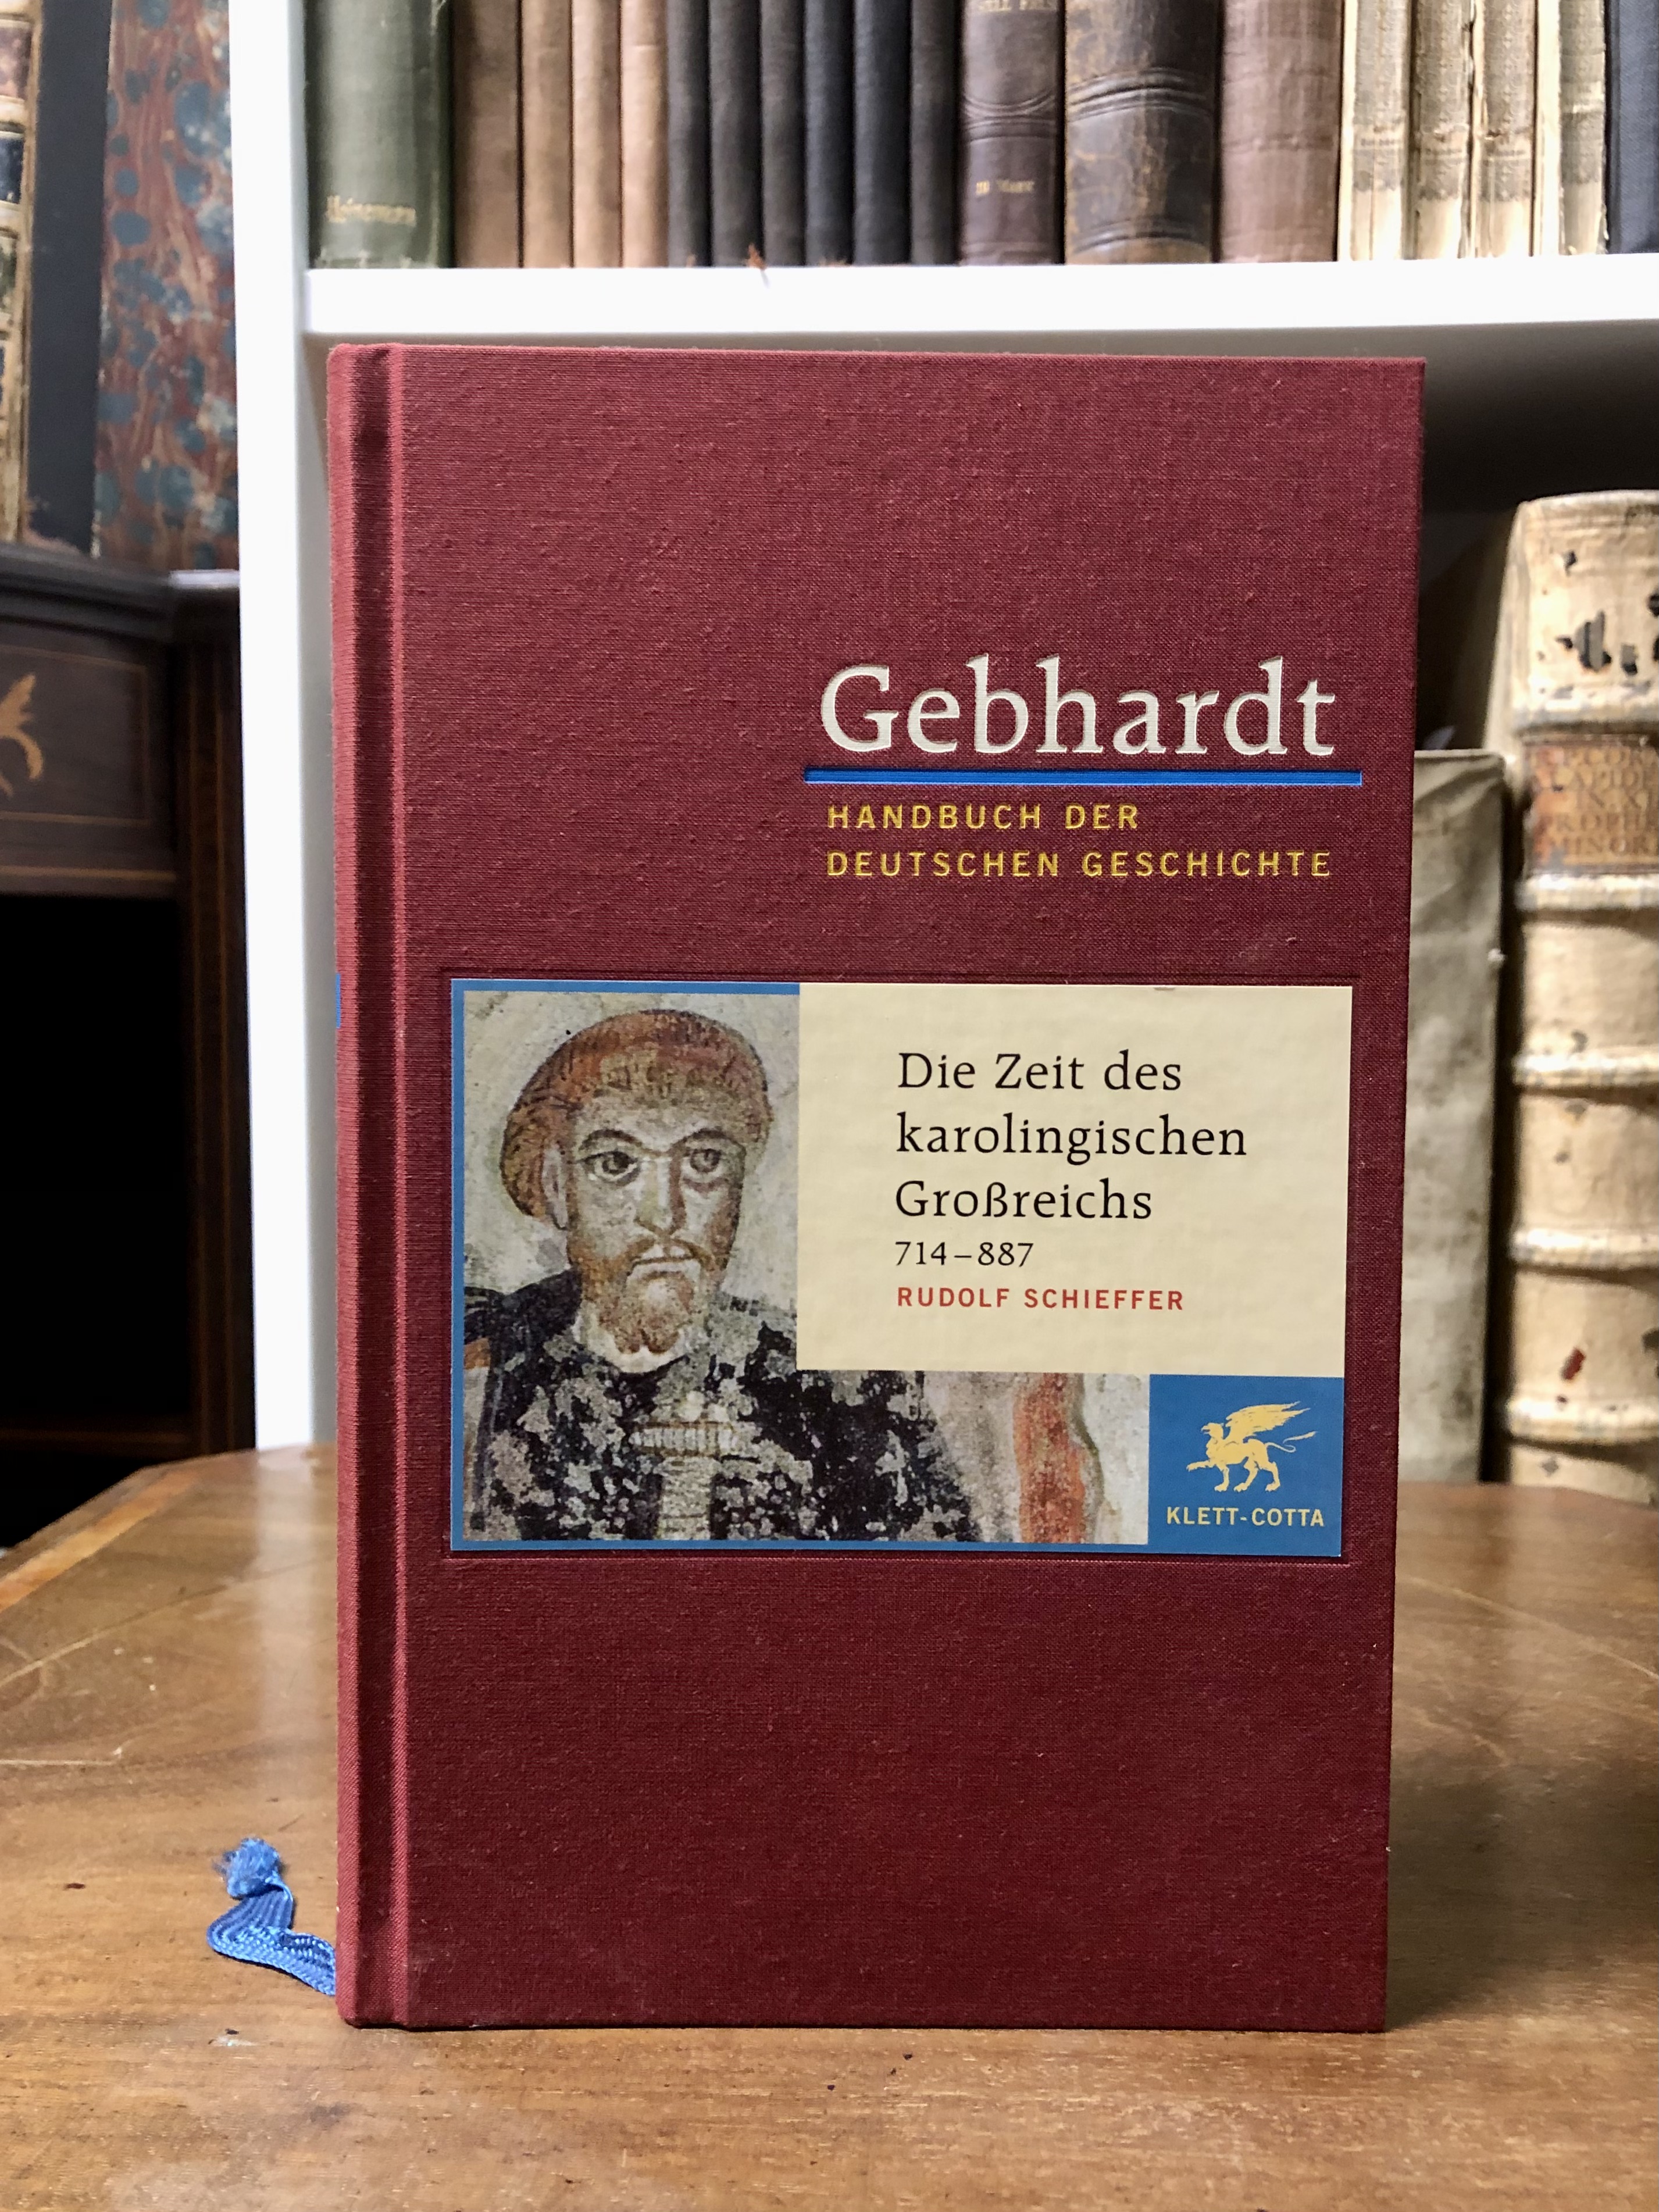 Die Zeit des karolingischen Großreichs (714 - 887), (= Handbuch der deutschen Geschichte, Band 2). - Schieffer Rudolf,